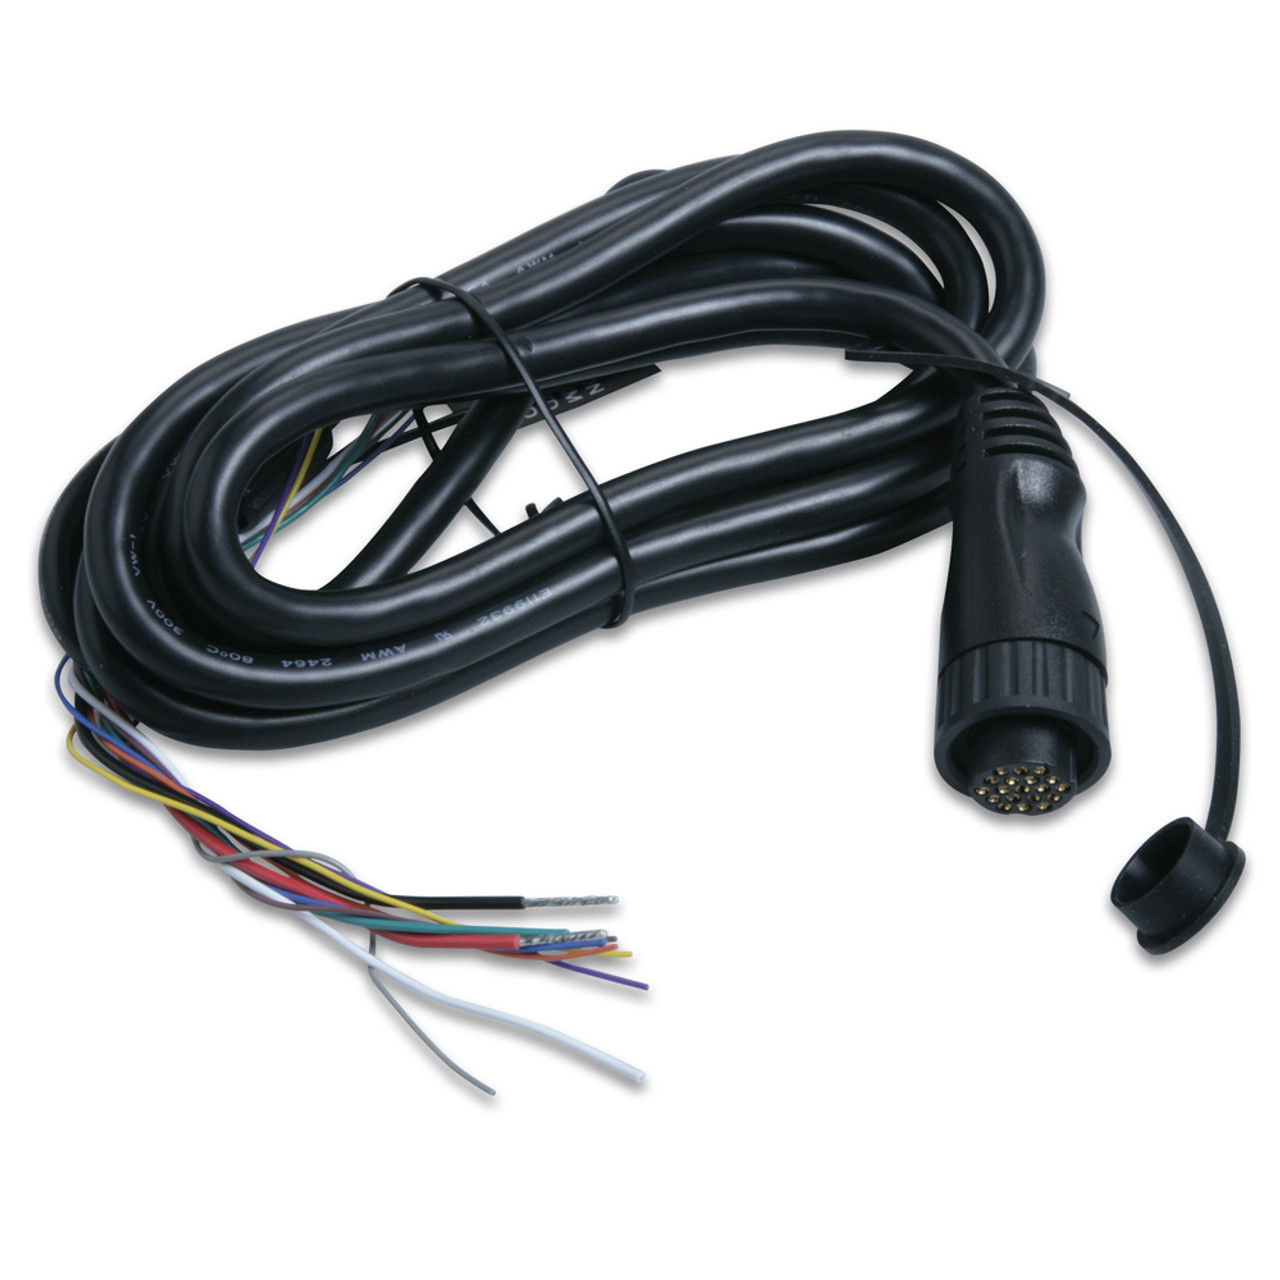 Garmin AIS 600 Power / Data Cable